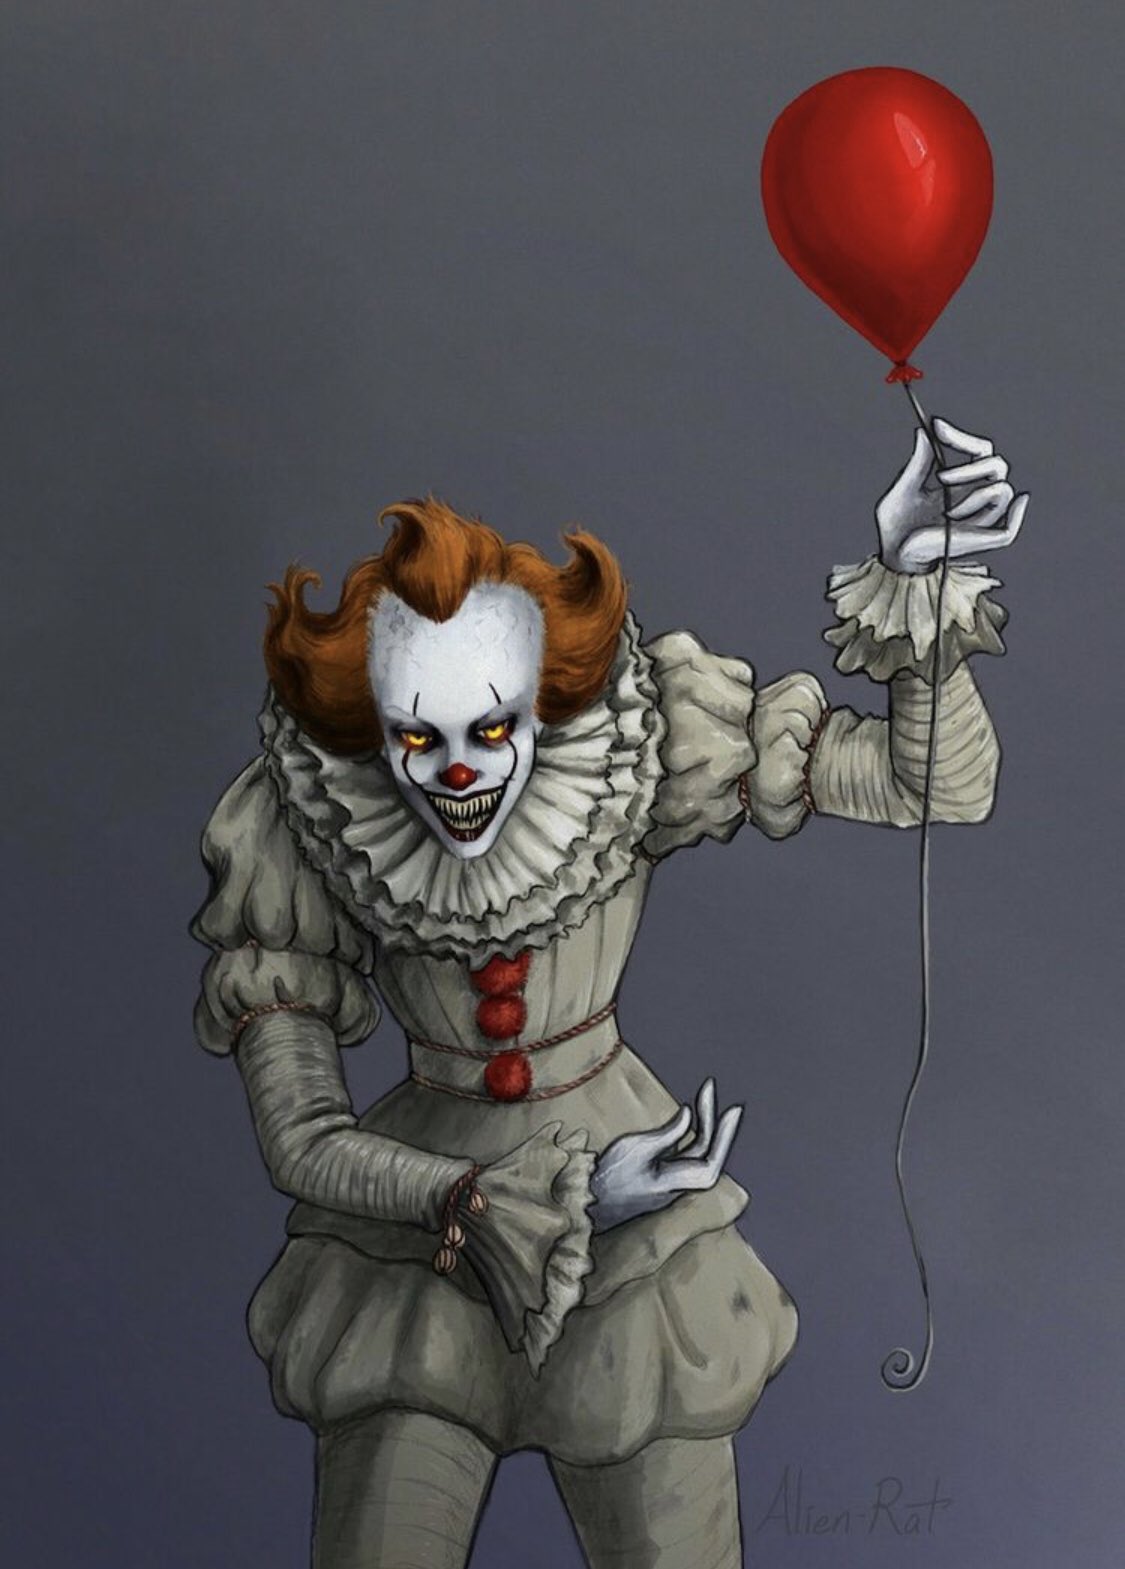 Het Reizen Dankbaar Pennywise 🎈 on Twitter: "Do you want a balloon? 🎈🎈🎈🎈🎈🎈🎈🎈🎈🎈🎈🎈  #Pennywise #Horror #ITMovie #IT2 https://t.co/lKGQgXtpOm" / Twitter